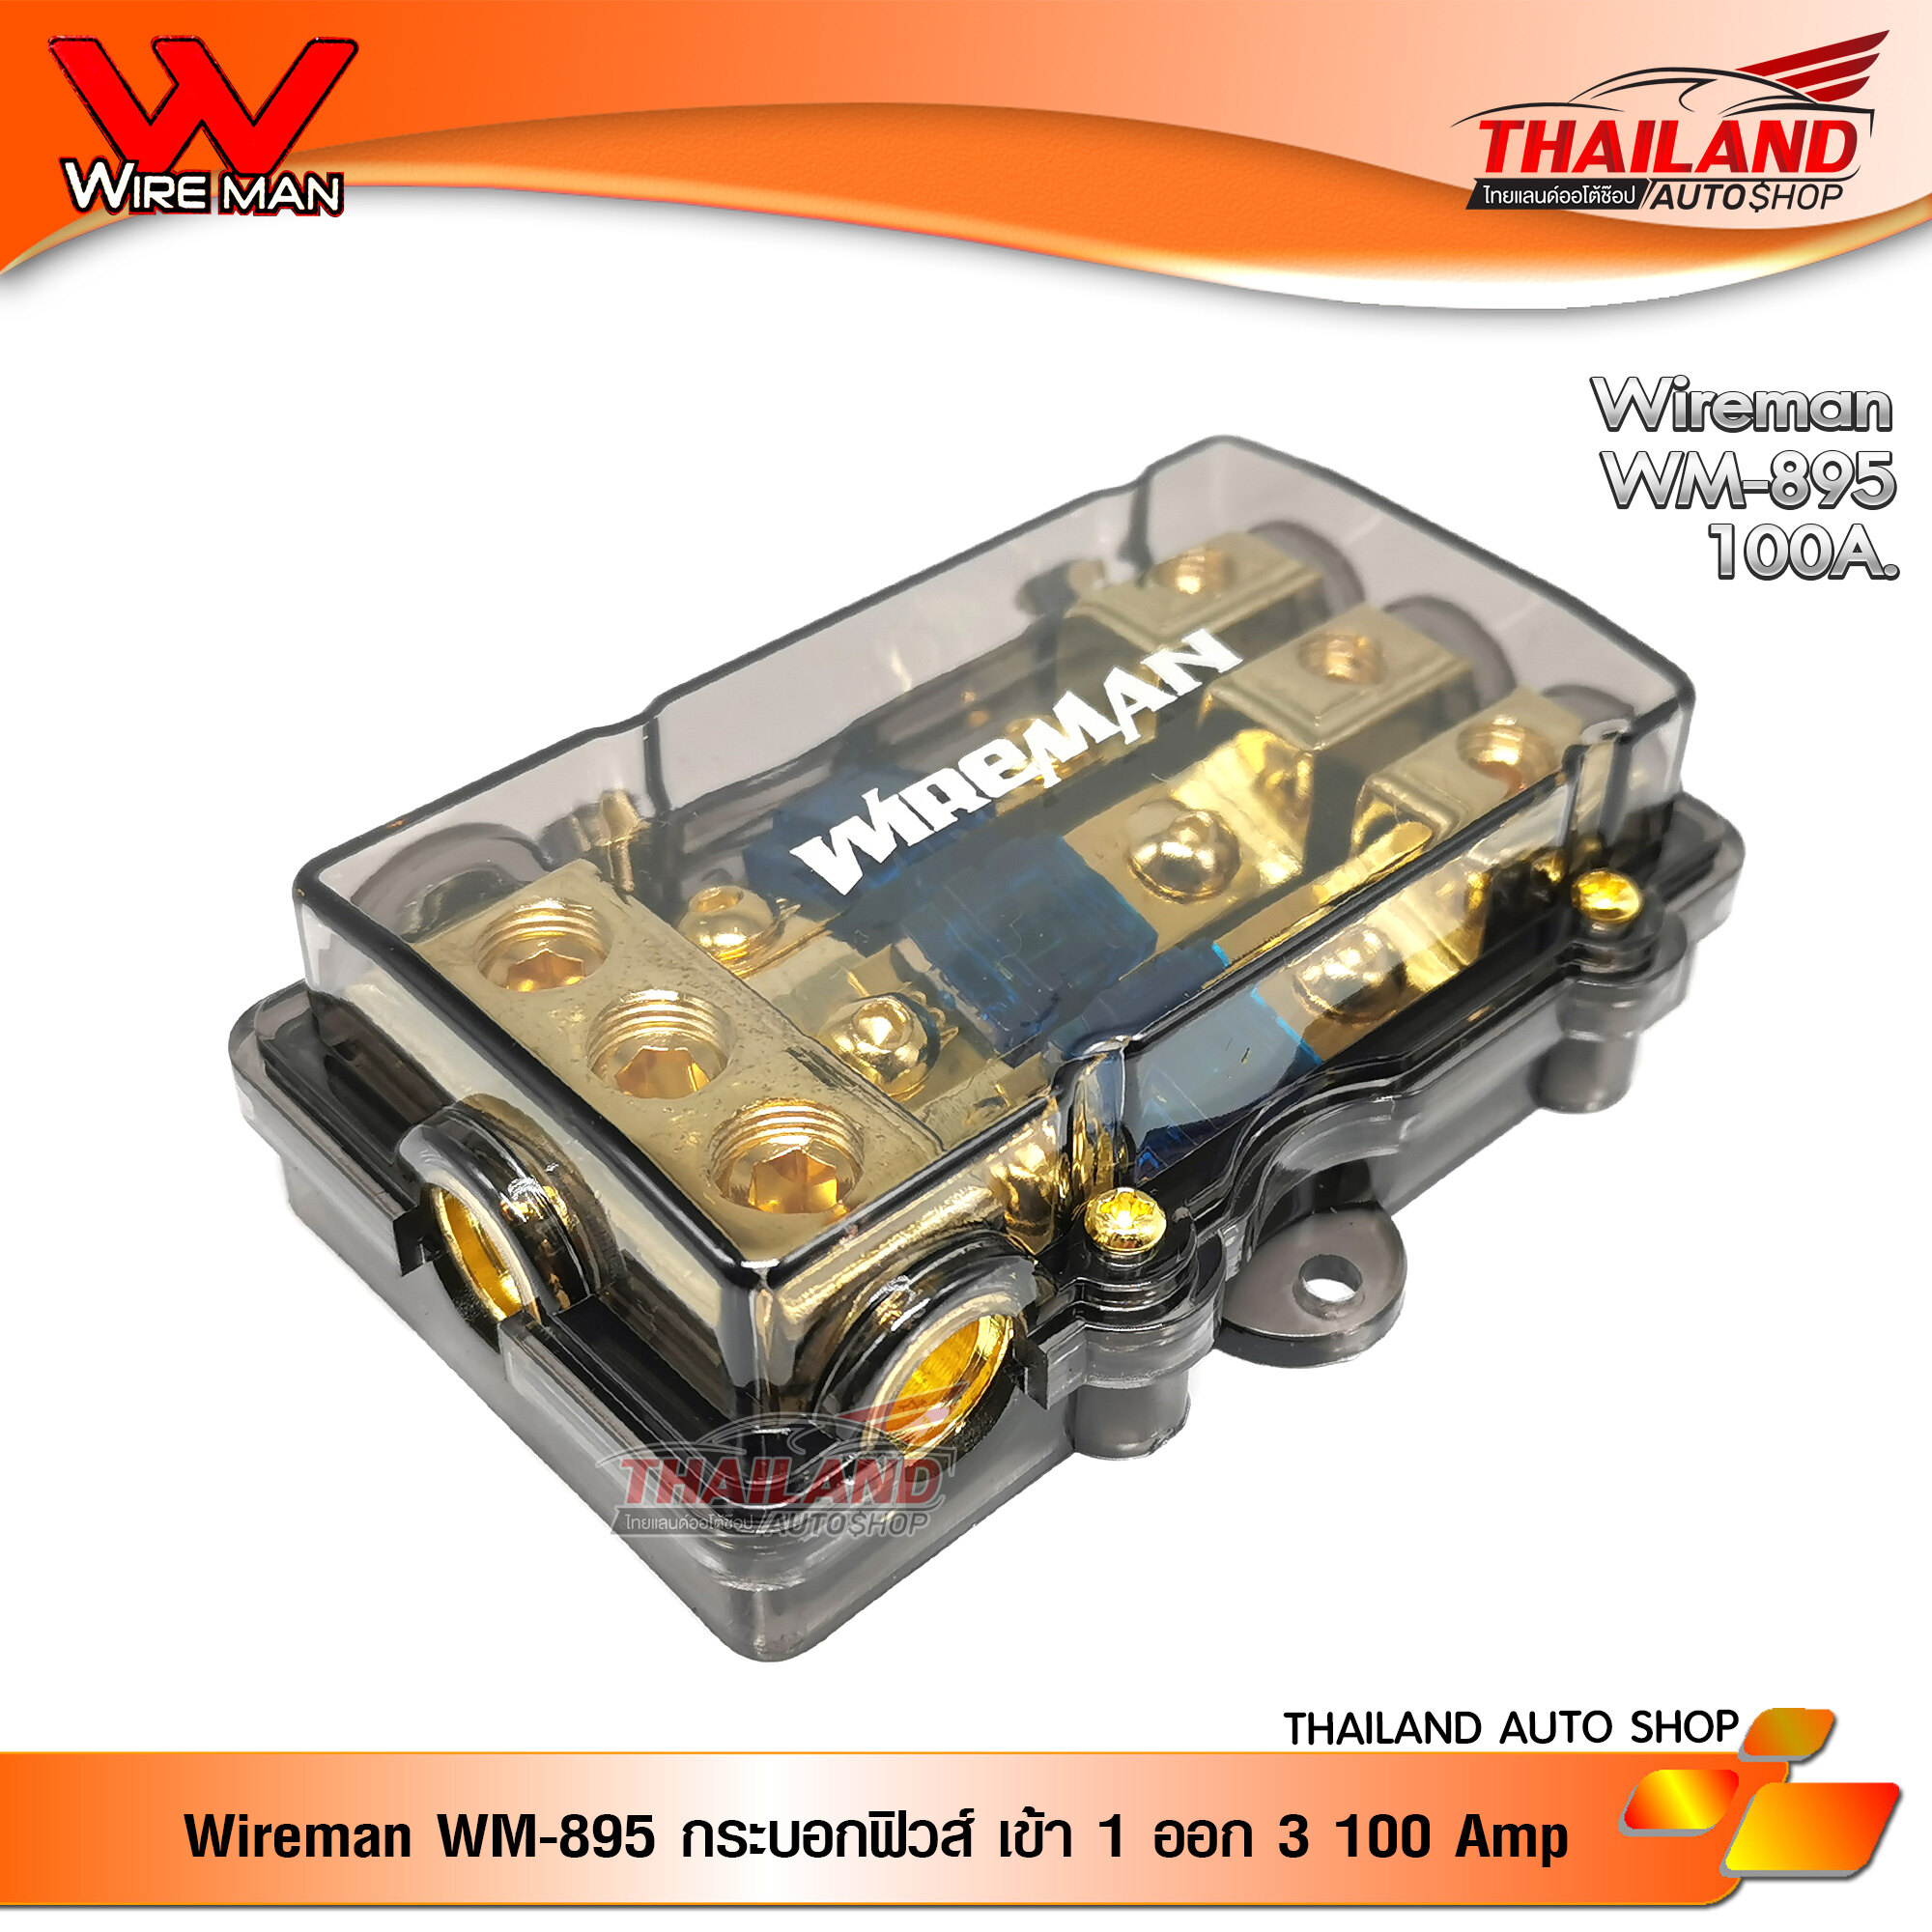 Wireman WM-895 ฟิวส์รถยนต์ / เครื่องเสียงรถยนต์ กล่องฟิวส์ แบบ เข้า 1 ทาง ออก 3 ทาง 100 Amp